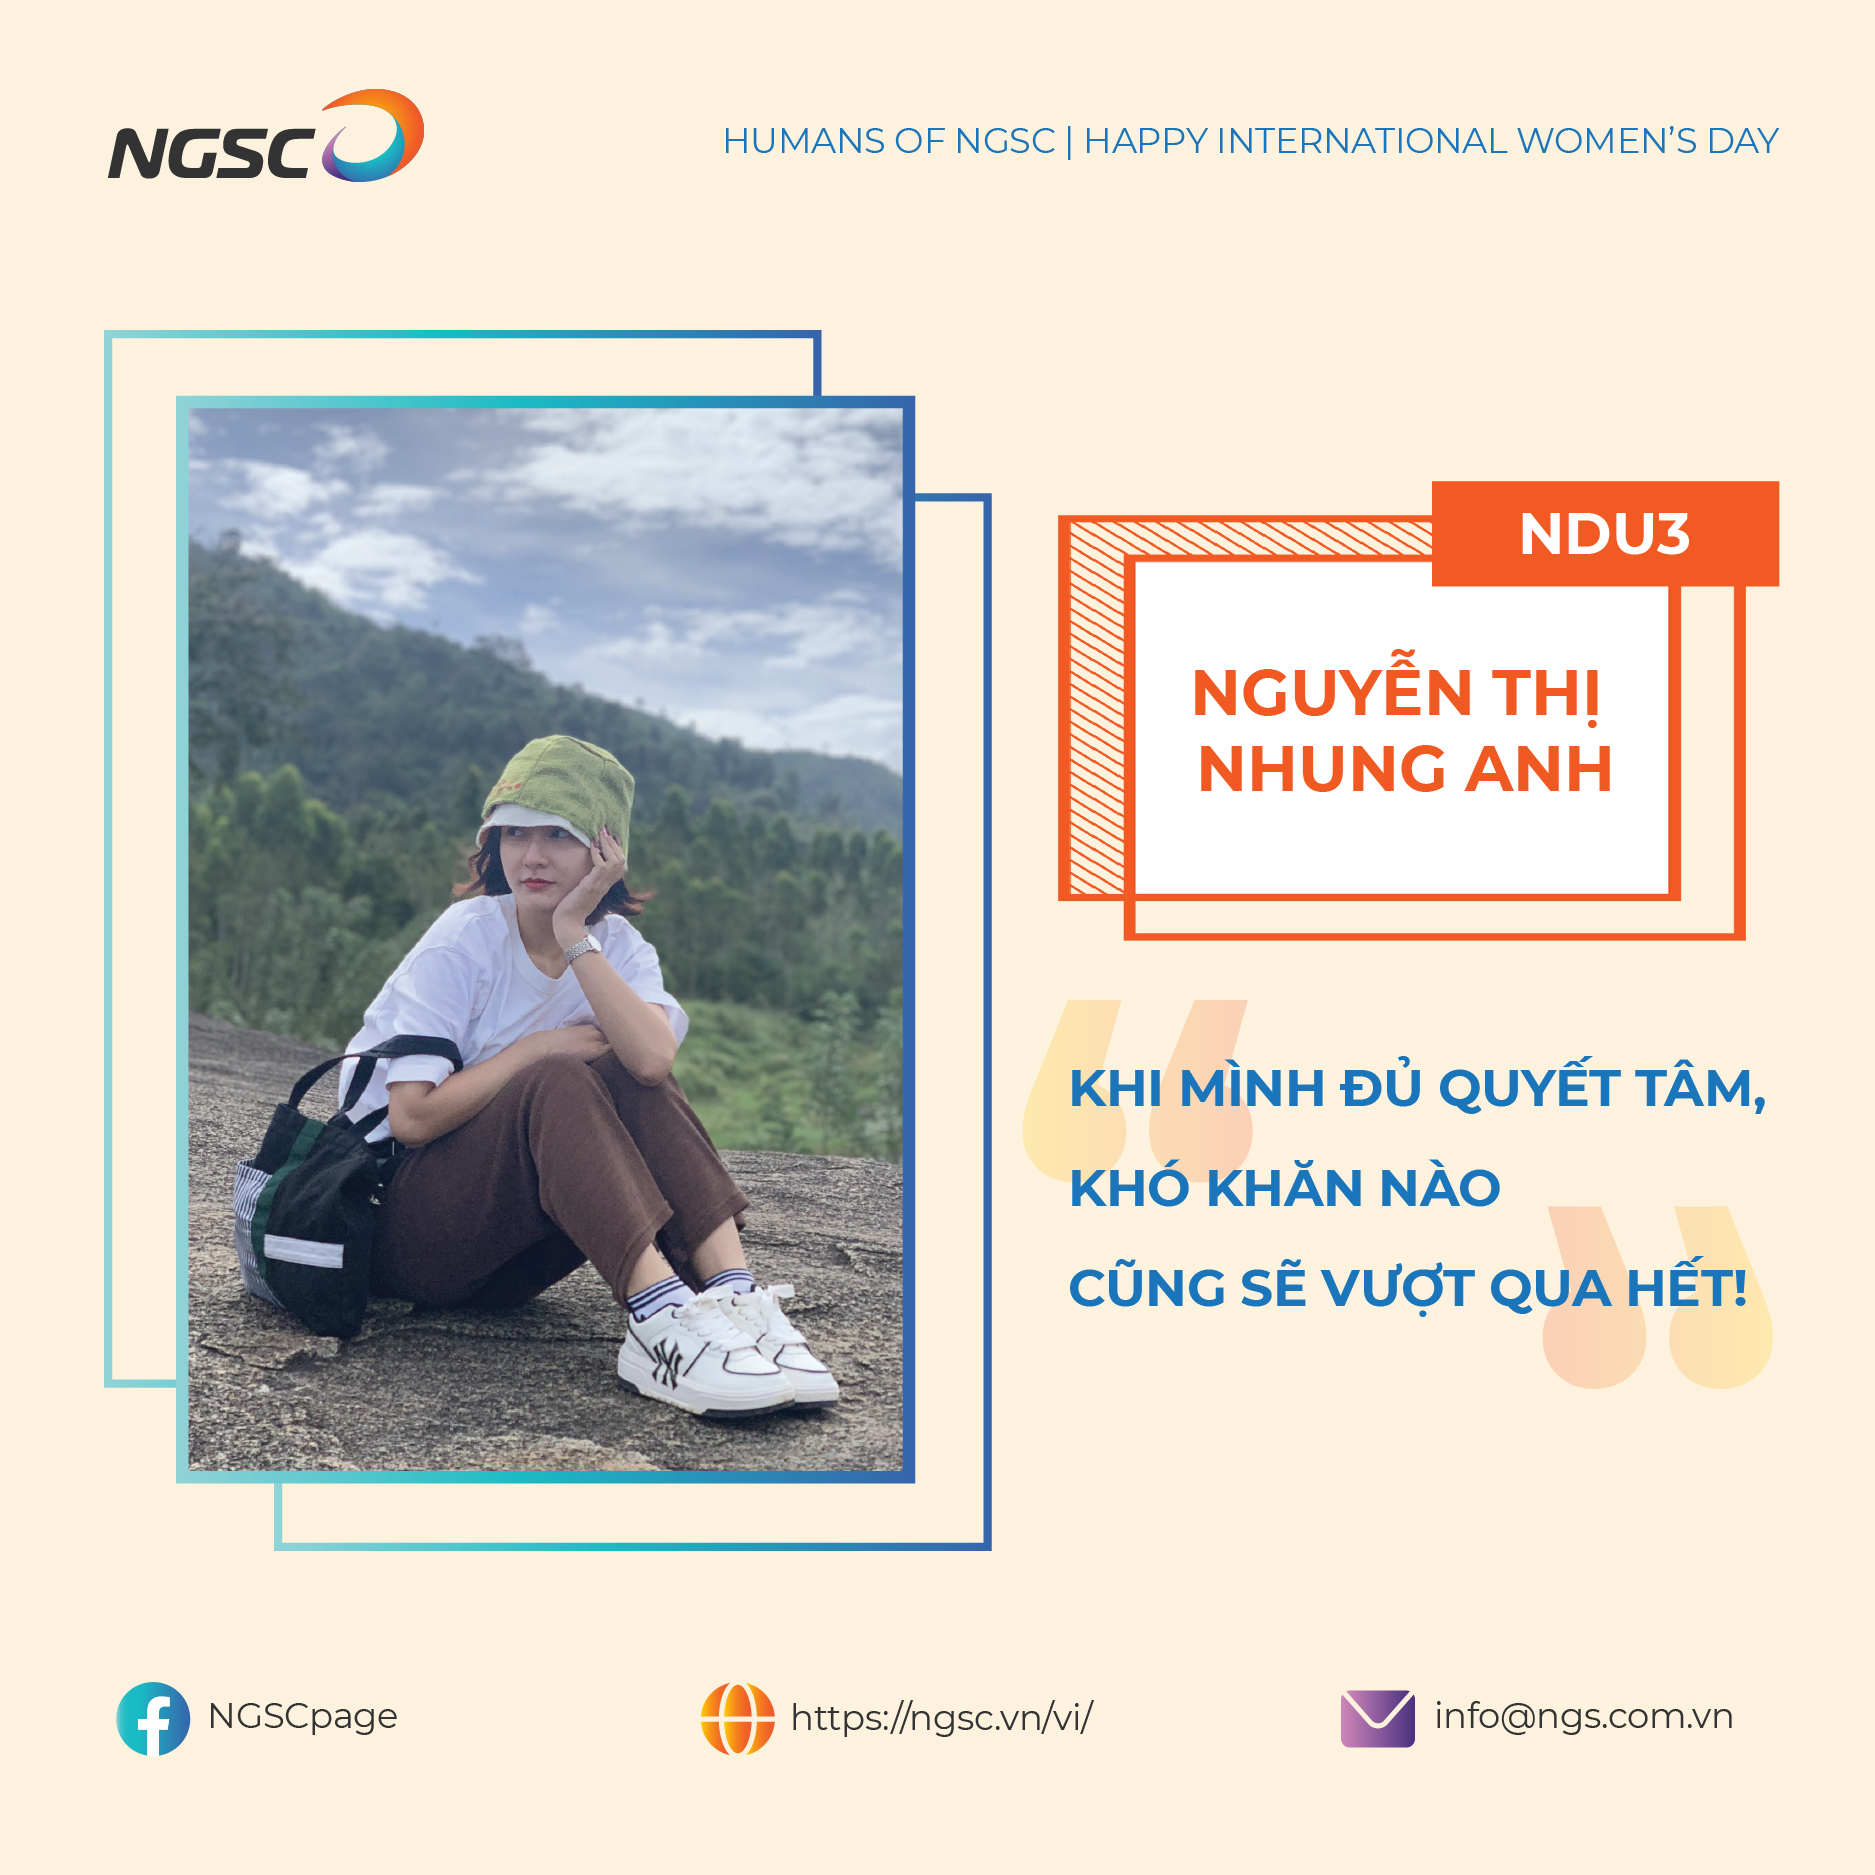 Nguyễn Thị Nhung Anh (NDU3) - Khi mình đủ quyết tâm, khó khăn nào cũng sẽ vượt qua hết